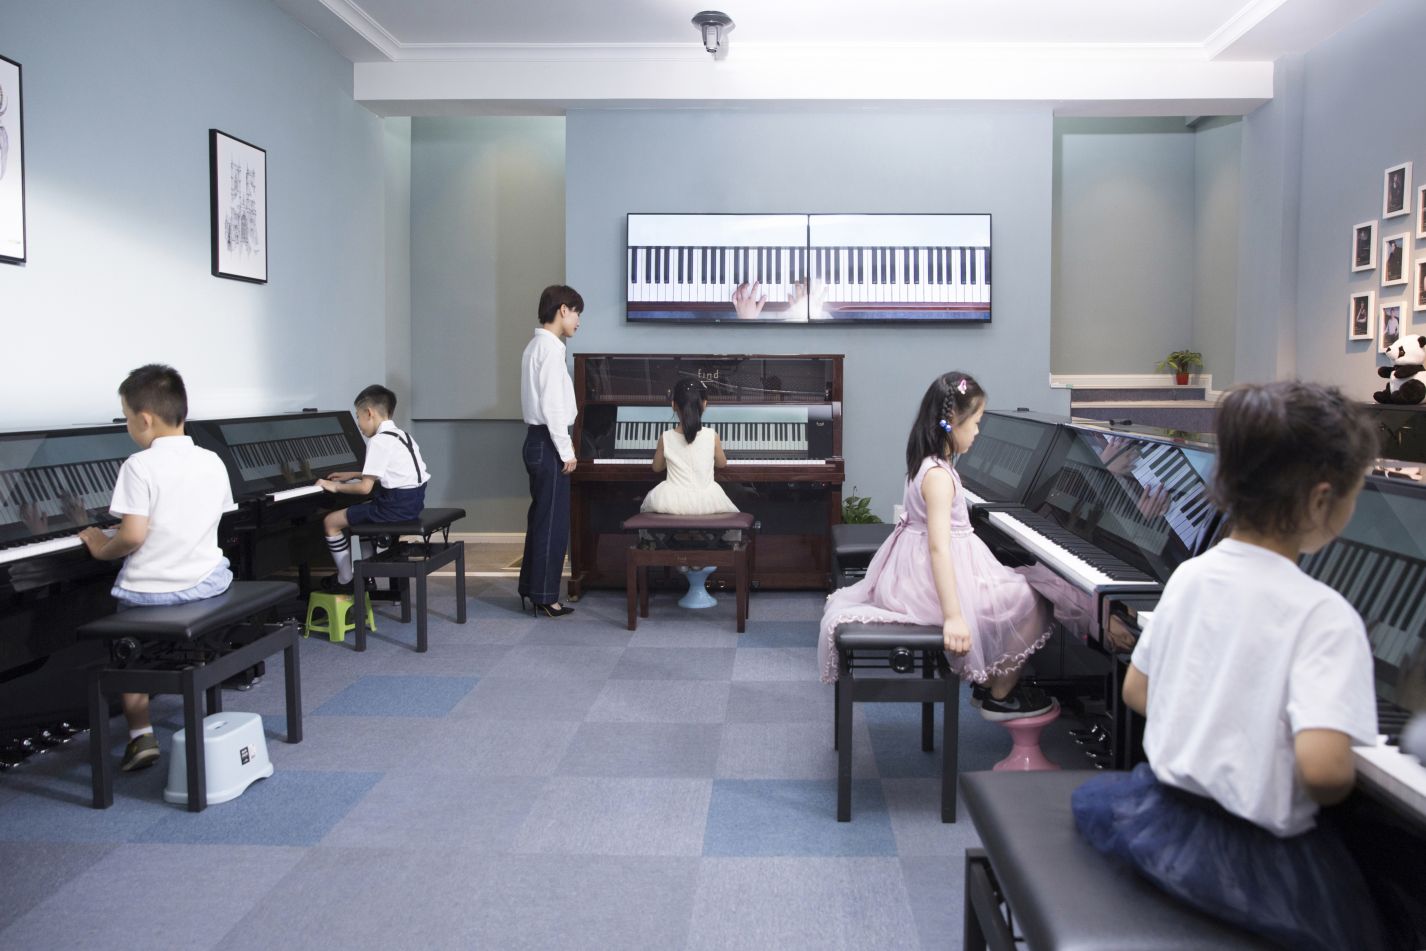 上海FIND智慧钢琴培训环境图片